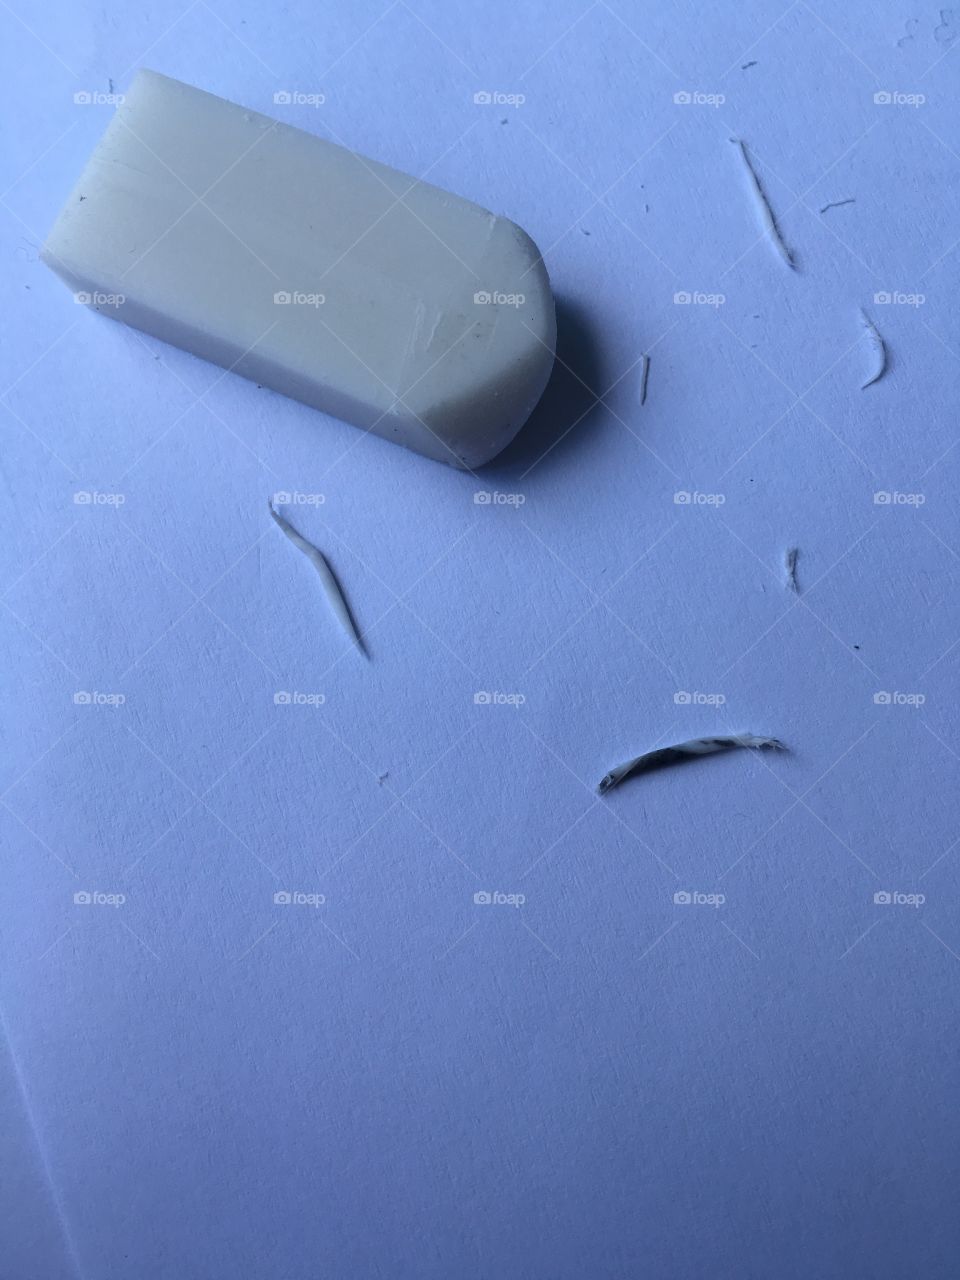 Erasing Eraser
